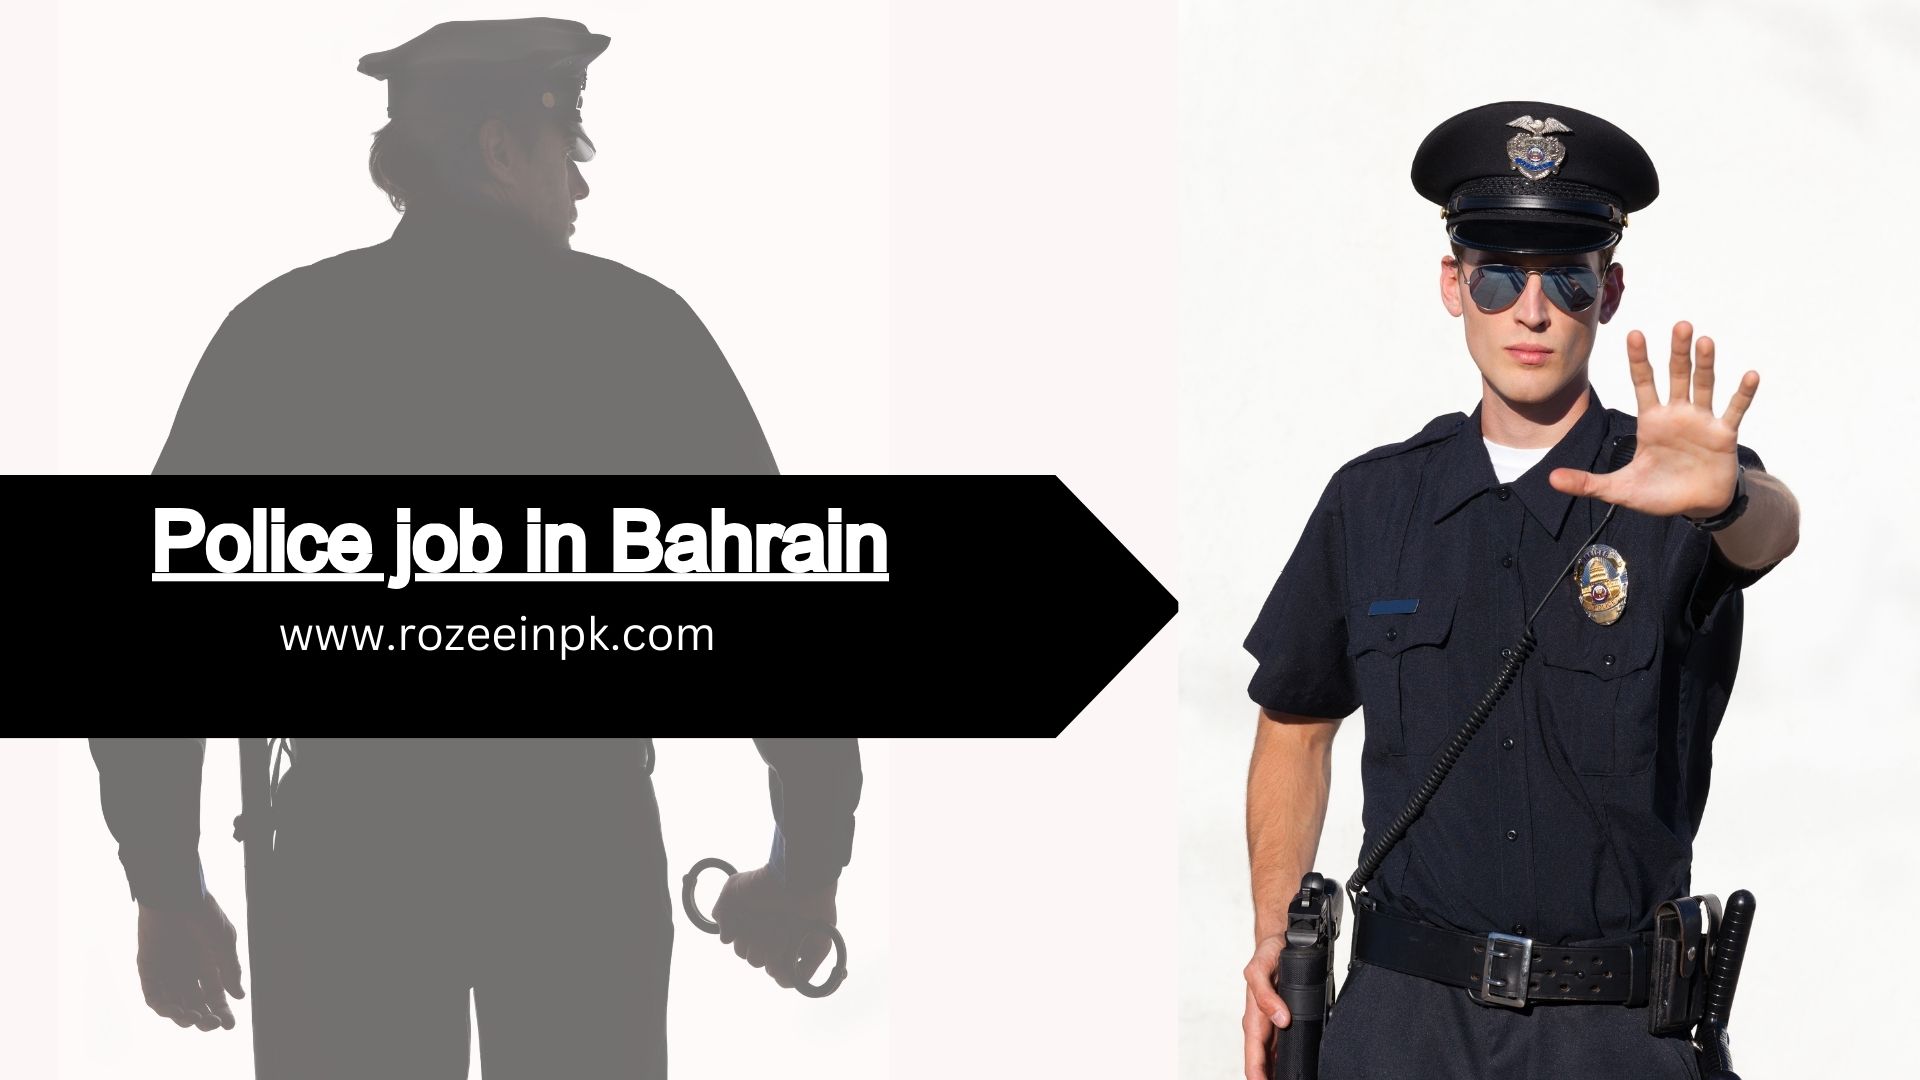 Police job in Bahrain